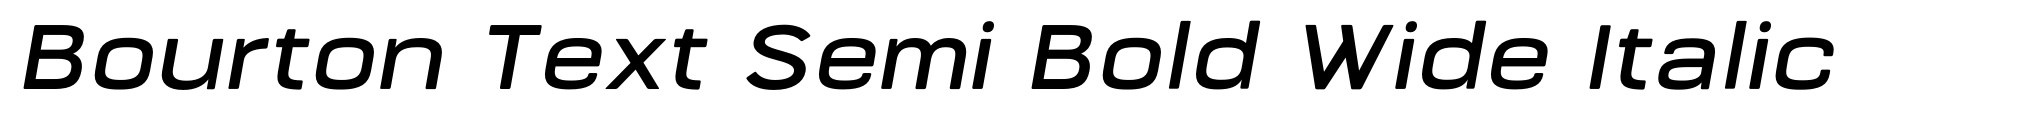 Bourton Text Semi Bold Wide Italic image